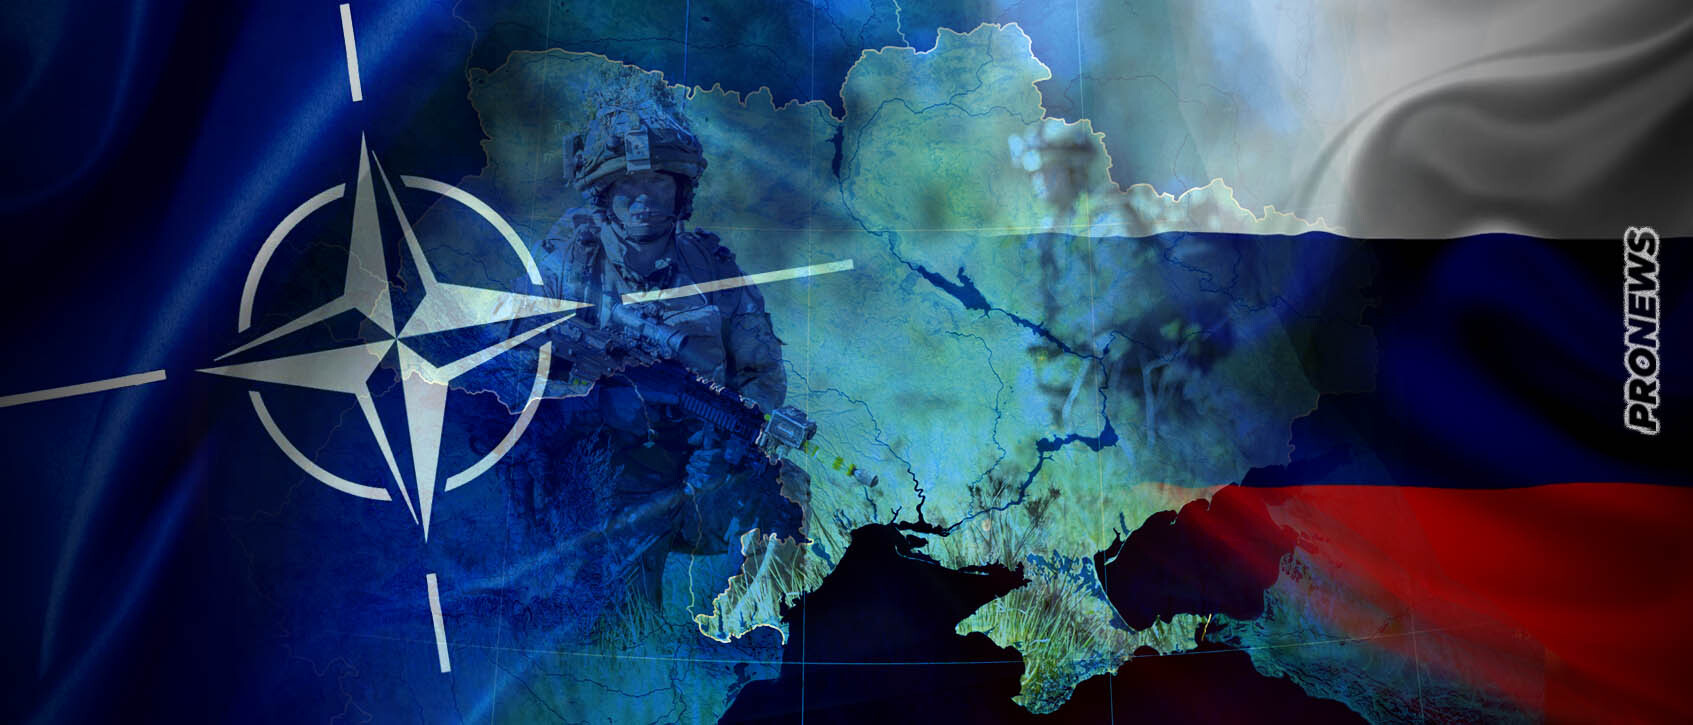 Η Πολωνία προαναγγέλλει επέμβαση του ΝΑΤΟ: «Εάν χρειαστεί θα πάμε εμείς στην Ουκρανία να τελειώσουμε την δουλειά»!